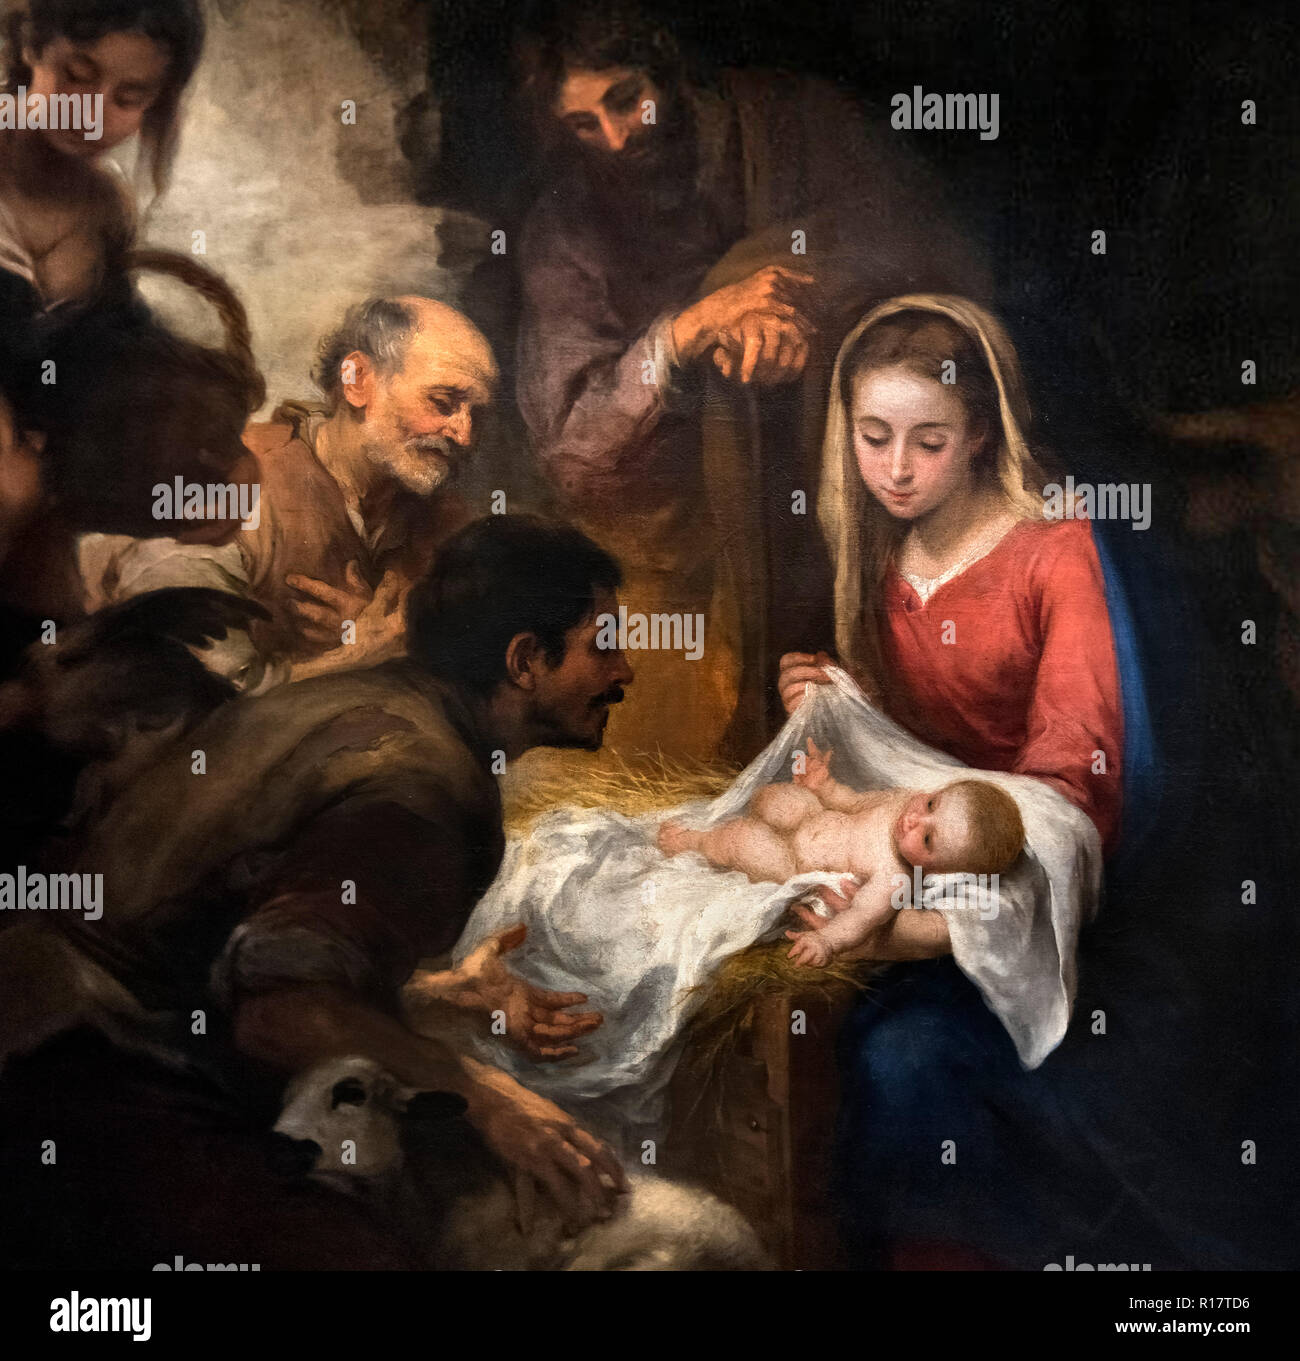 L Adorazione dei pastori (Adoracion de los Pastores) da Bartolomé-Esteban Murillo (1617-1682), olio su tela, c.1668-9. Scena della Natività. Dettaglio di un dipinto di grandi dimensioni, R17TD7. Foto Stock